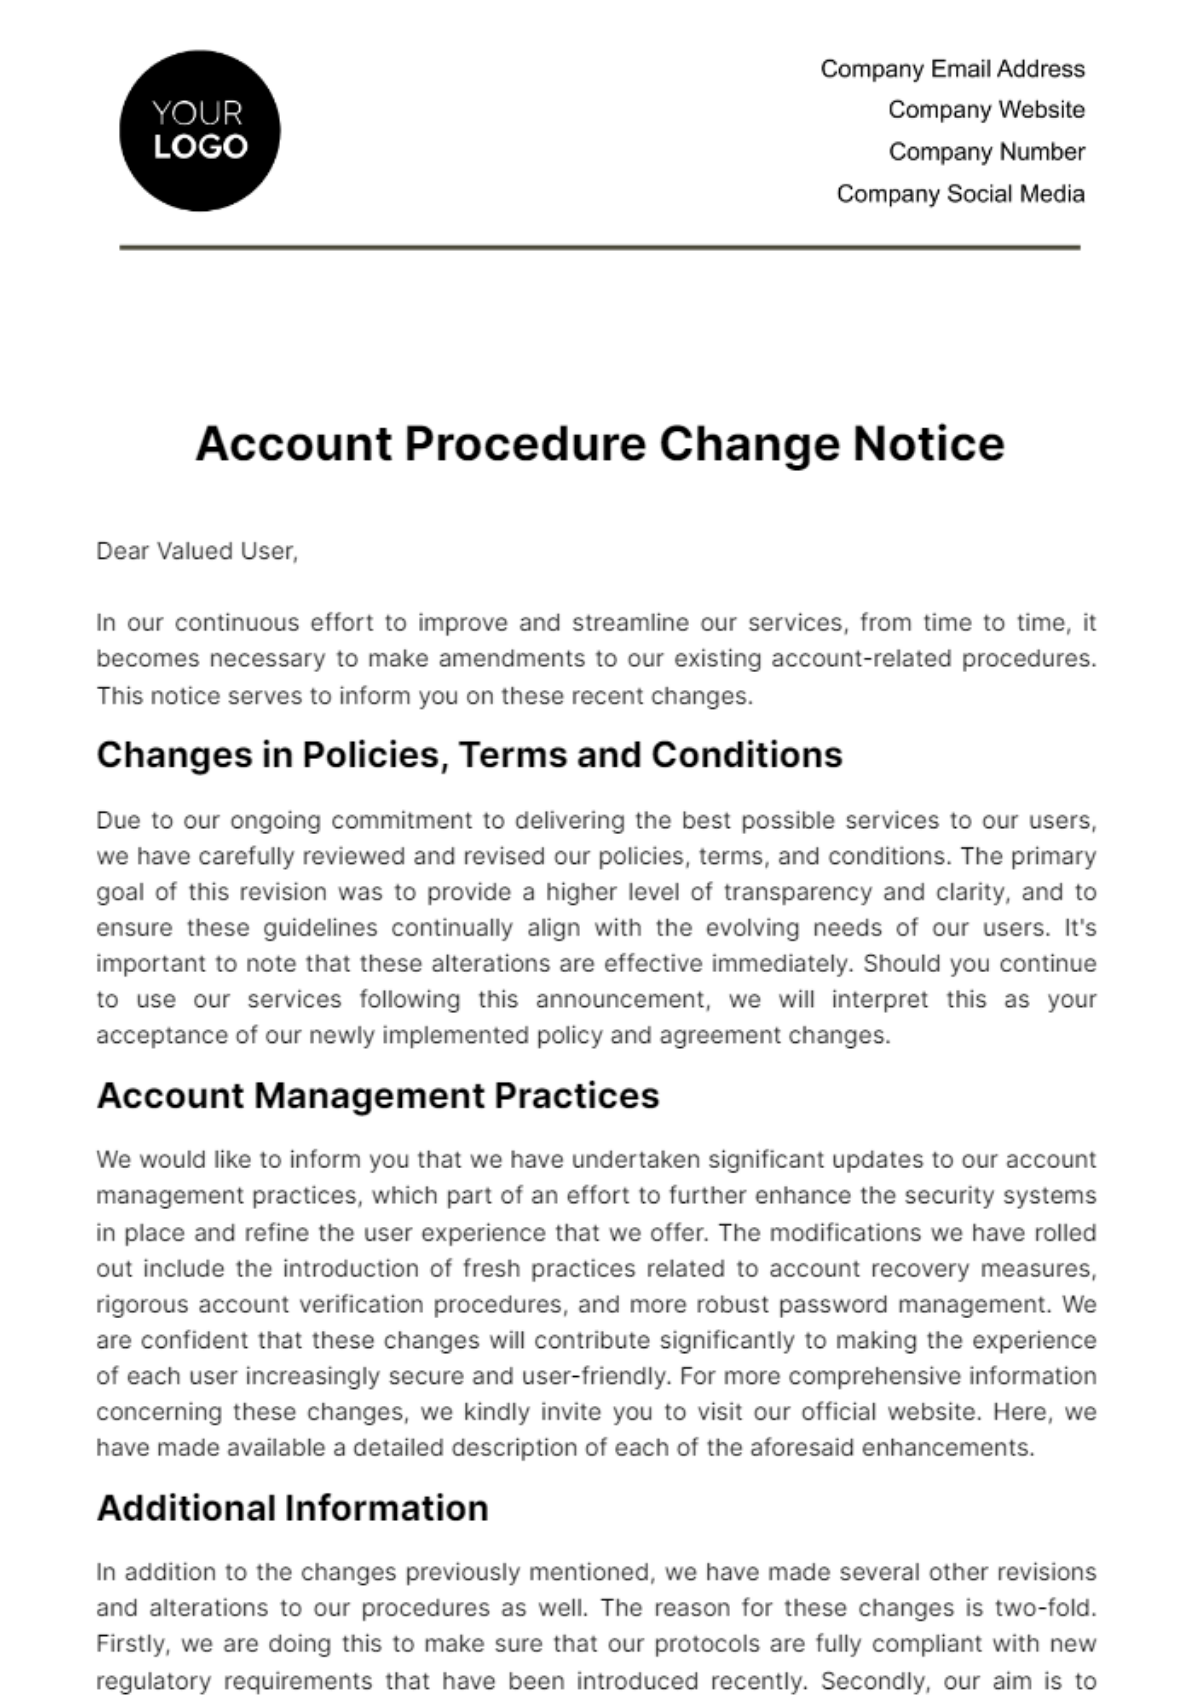 Free Account Procedure Change Notice Template